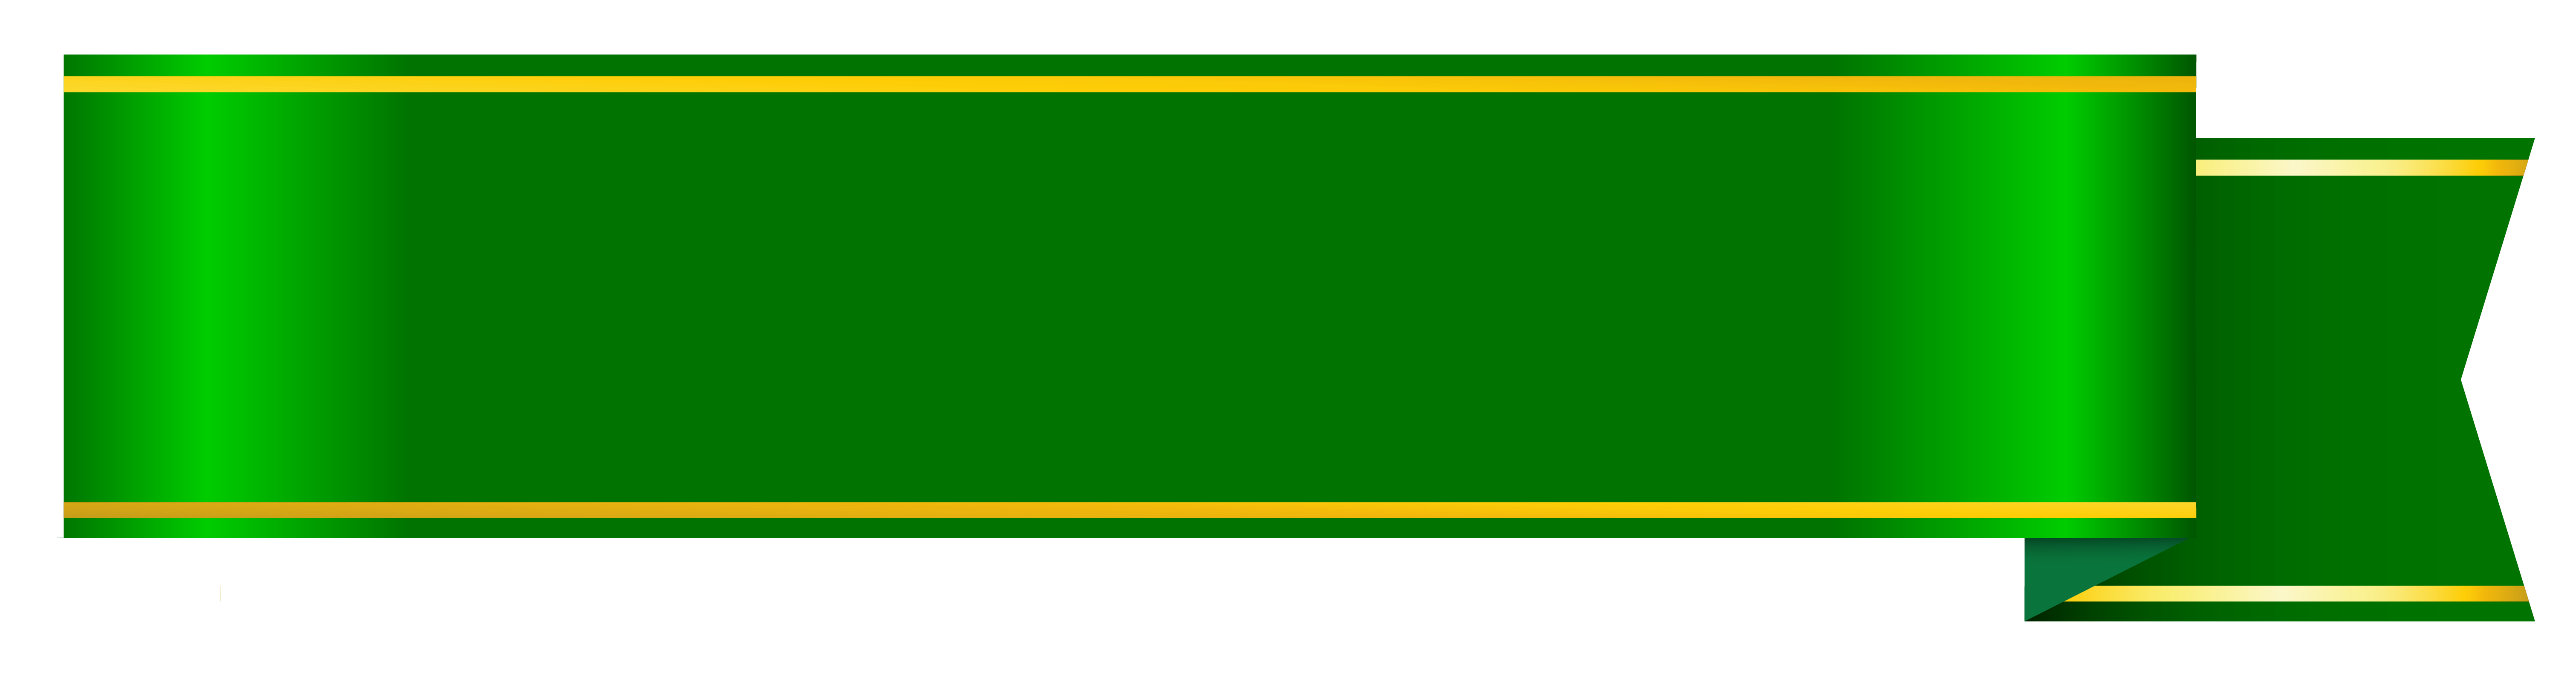 Зеленый баннер Скачать PNG Image